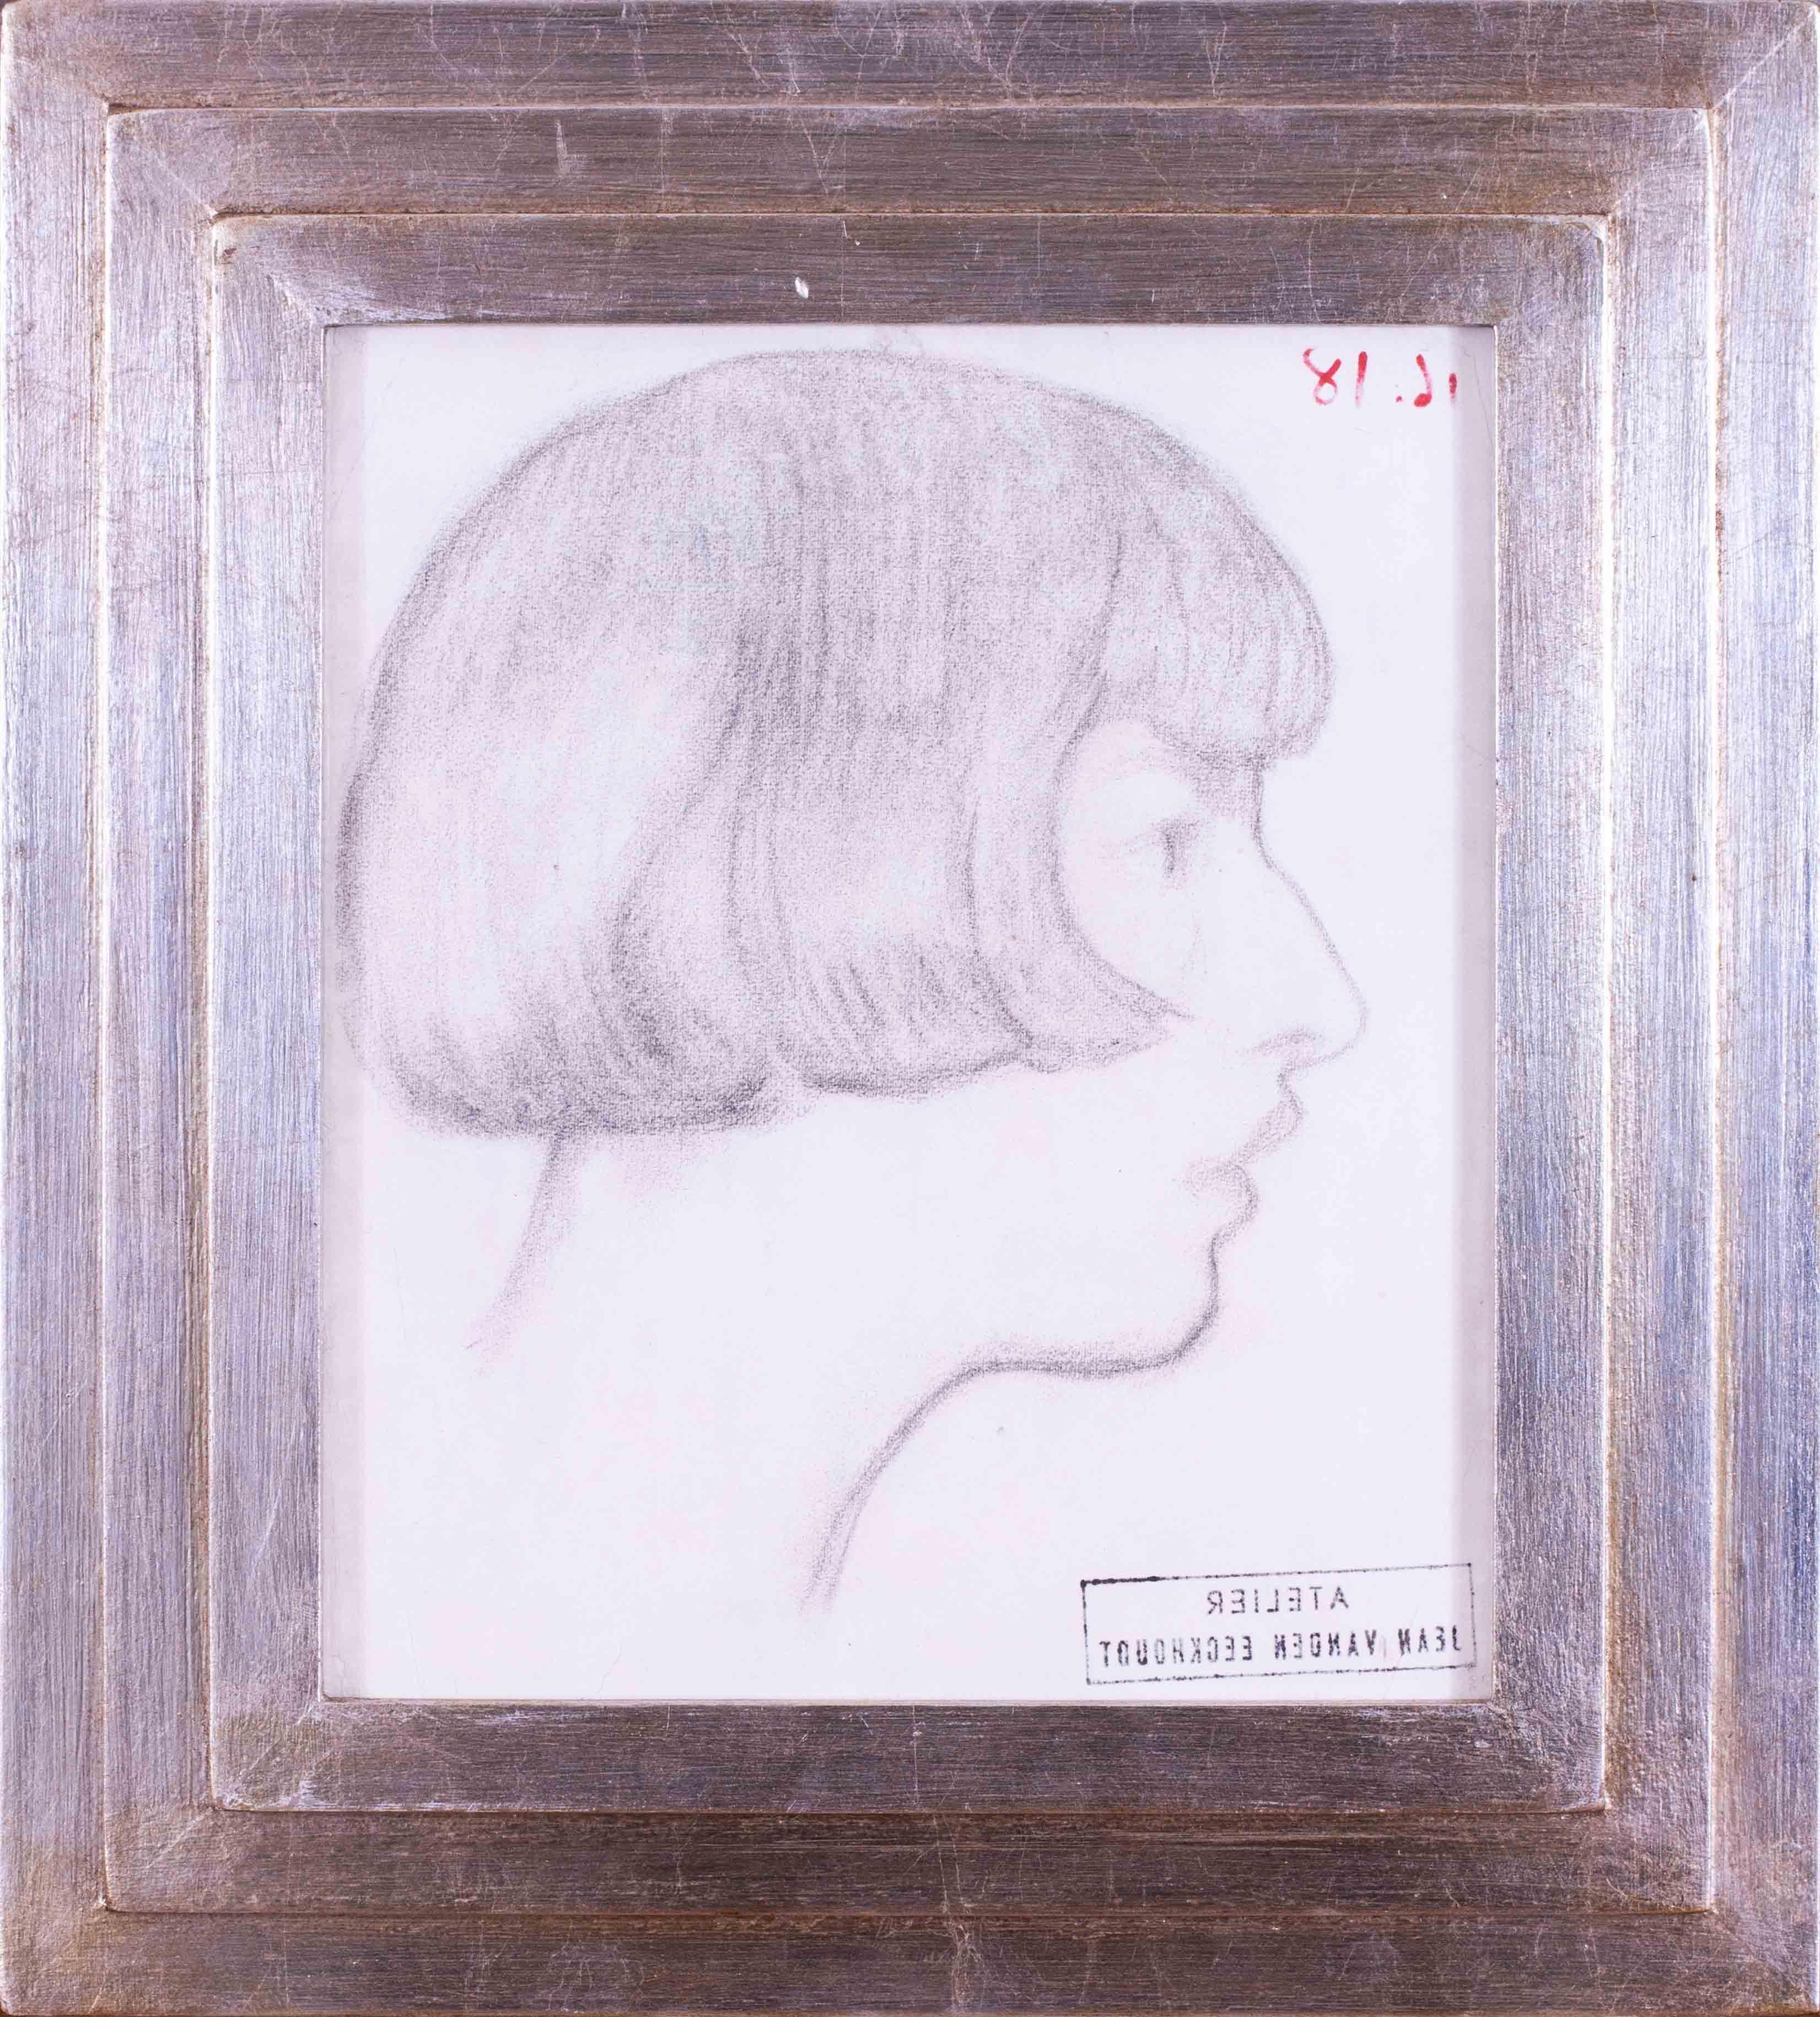 Magnifique portrait de profil du début du 20e siècle par l'artiste belge Jean van den Eeckhoudt de sa fille Zoum, dessiné vers 1918.  Cette œuvre spéciale provient de l'atelier de l'artiste.

Zoum Artistics était elle-même une artiste, mais elle